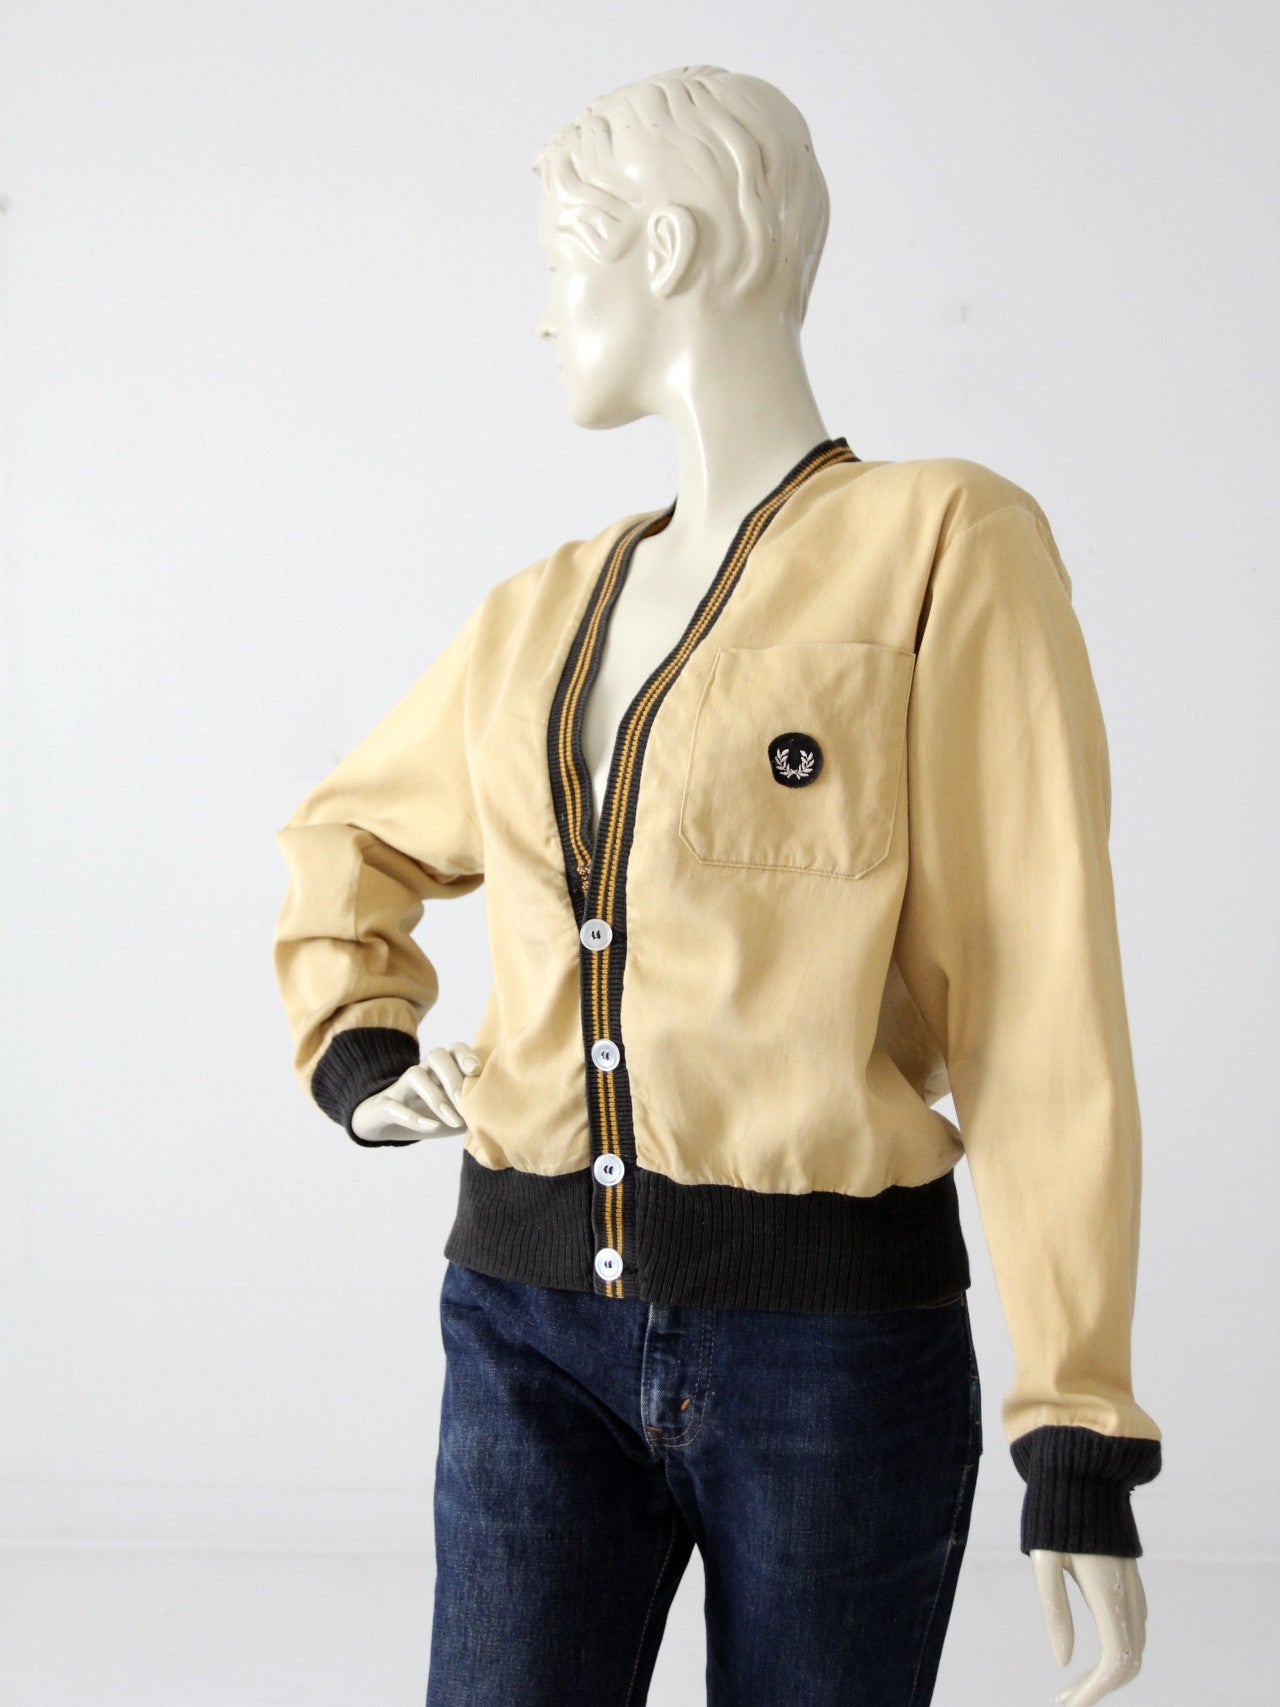 vintage 50s sportswear jacket by Bud Berma – 86 Vintage